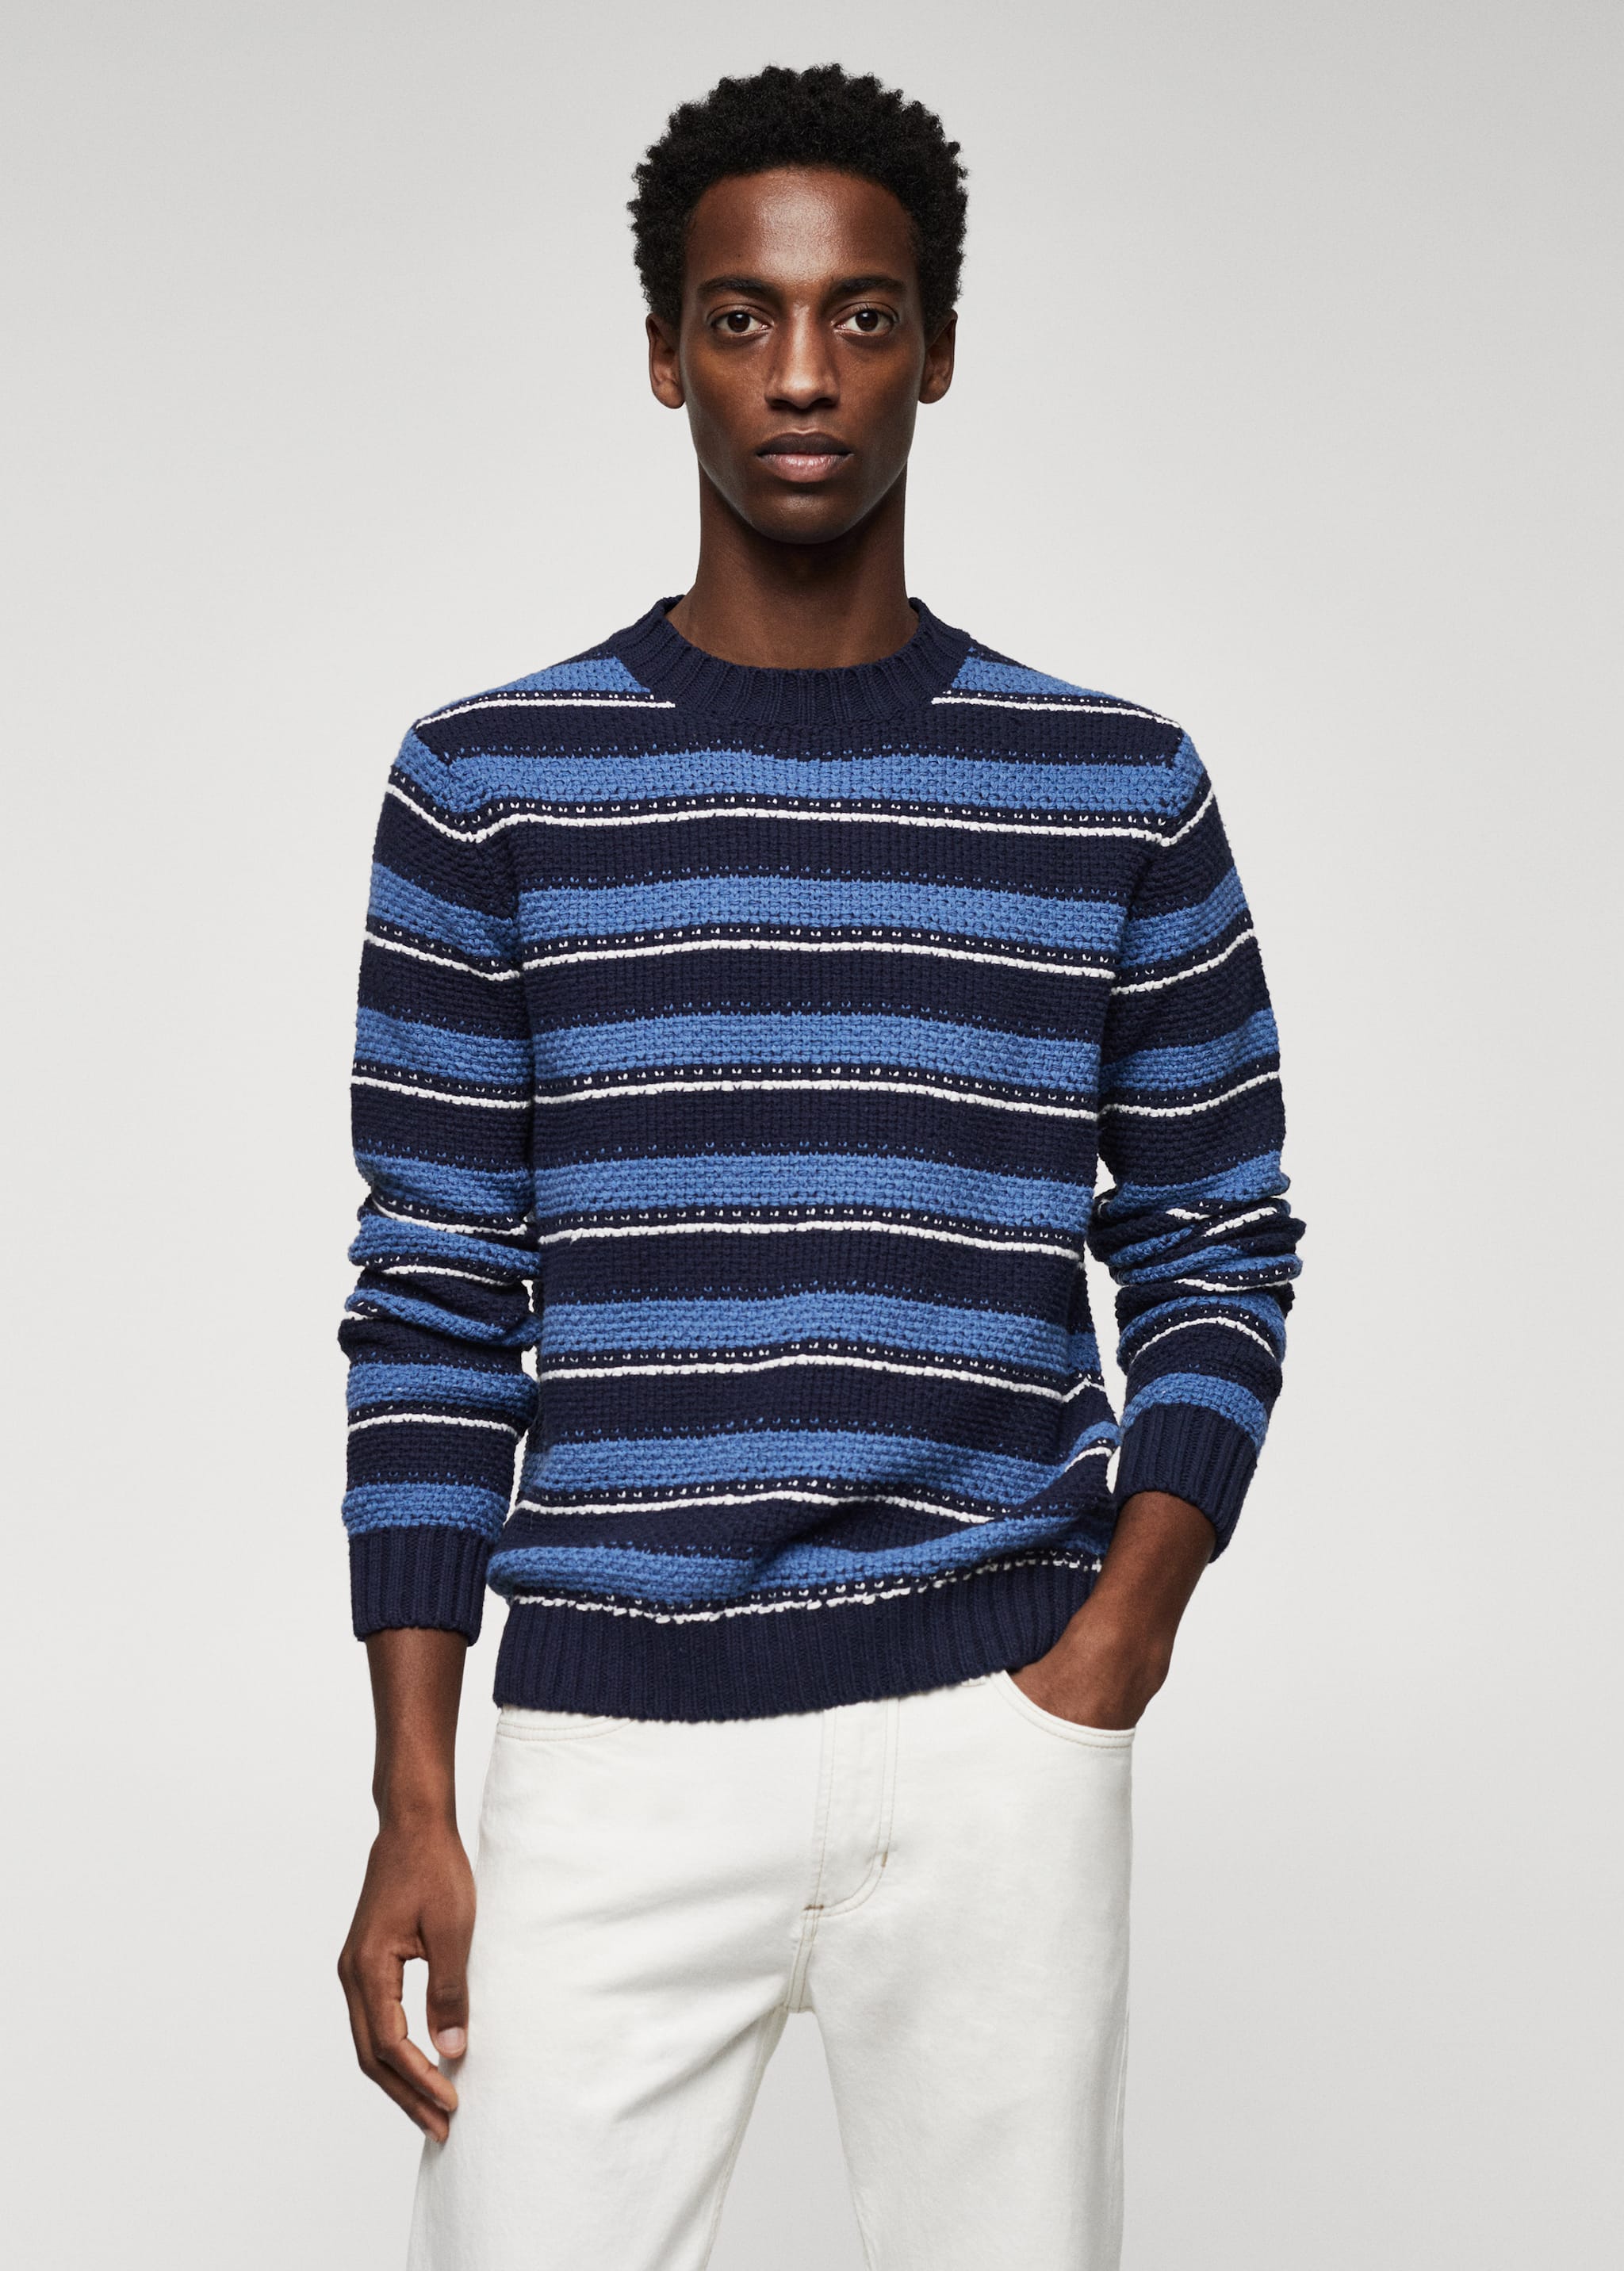 Strikket genser med striper - Halvtotal bildeutsnitt